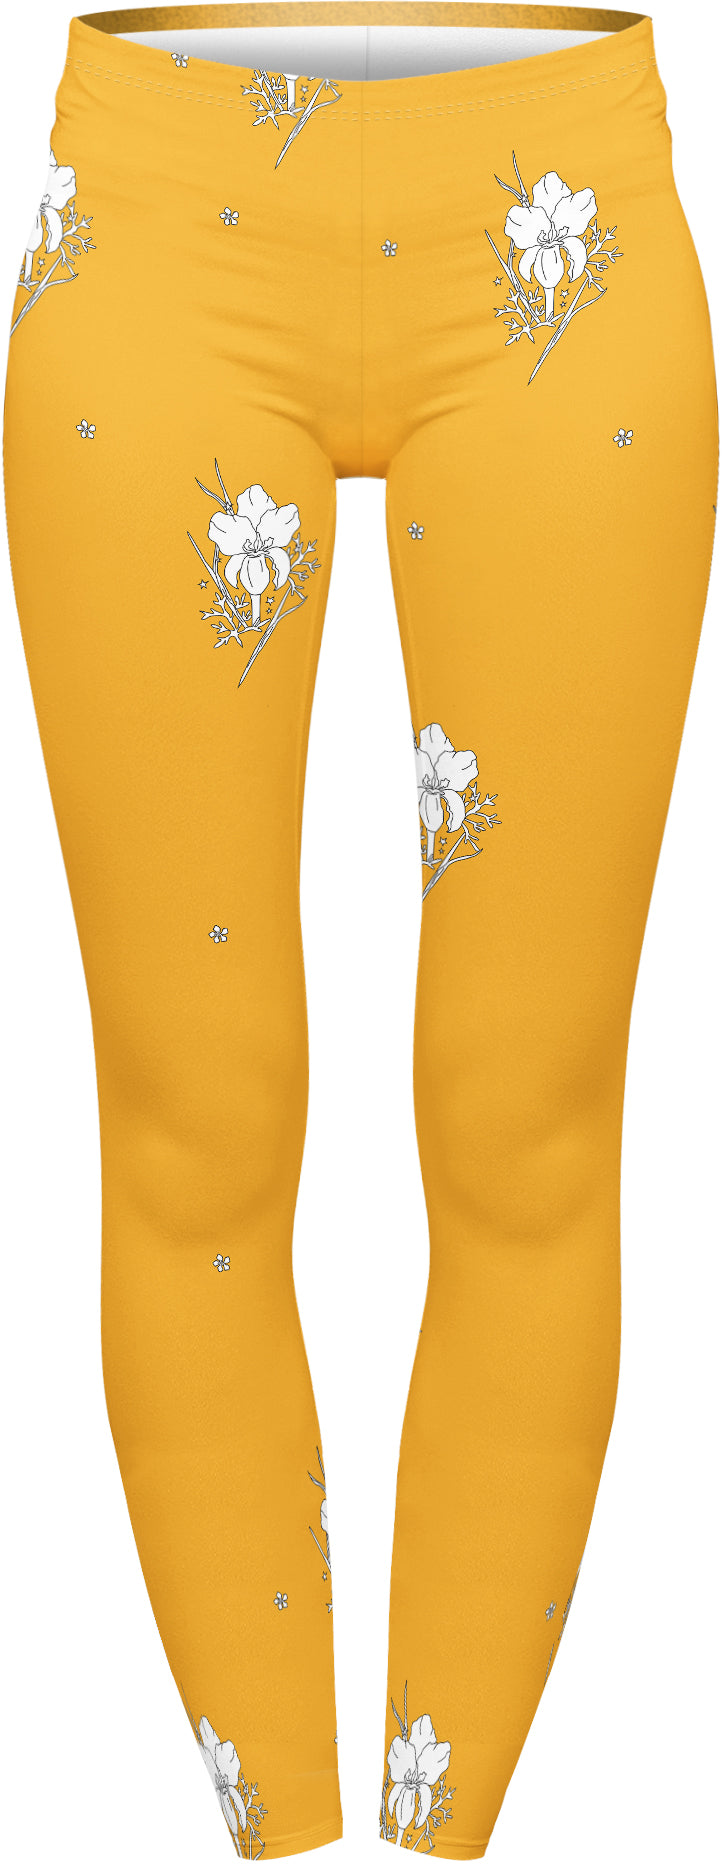 Regular Leggings (8-12 UK Size) - Mustard Iris